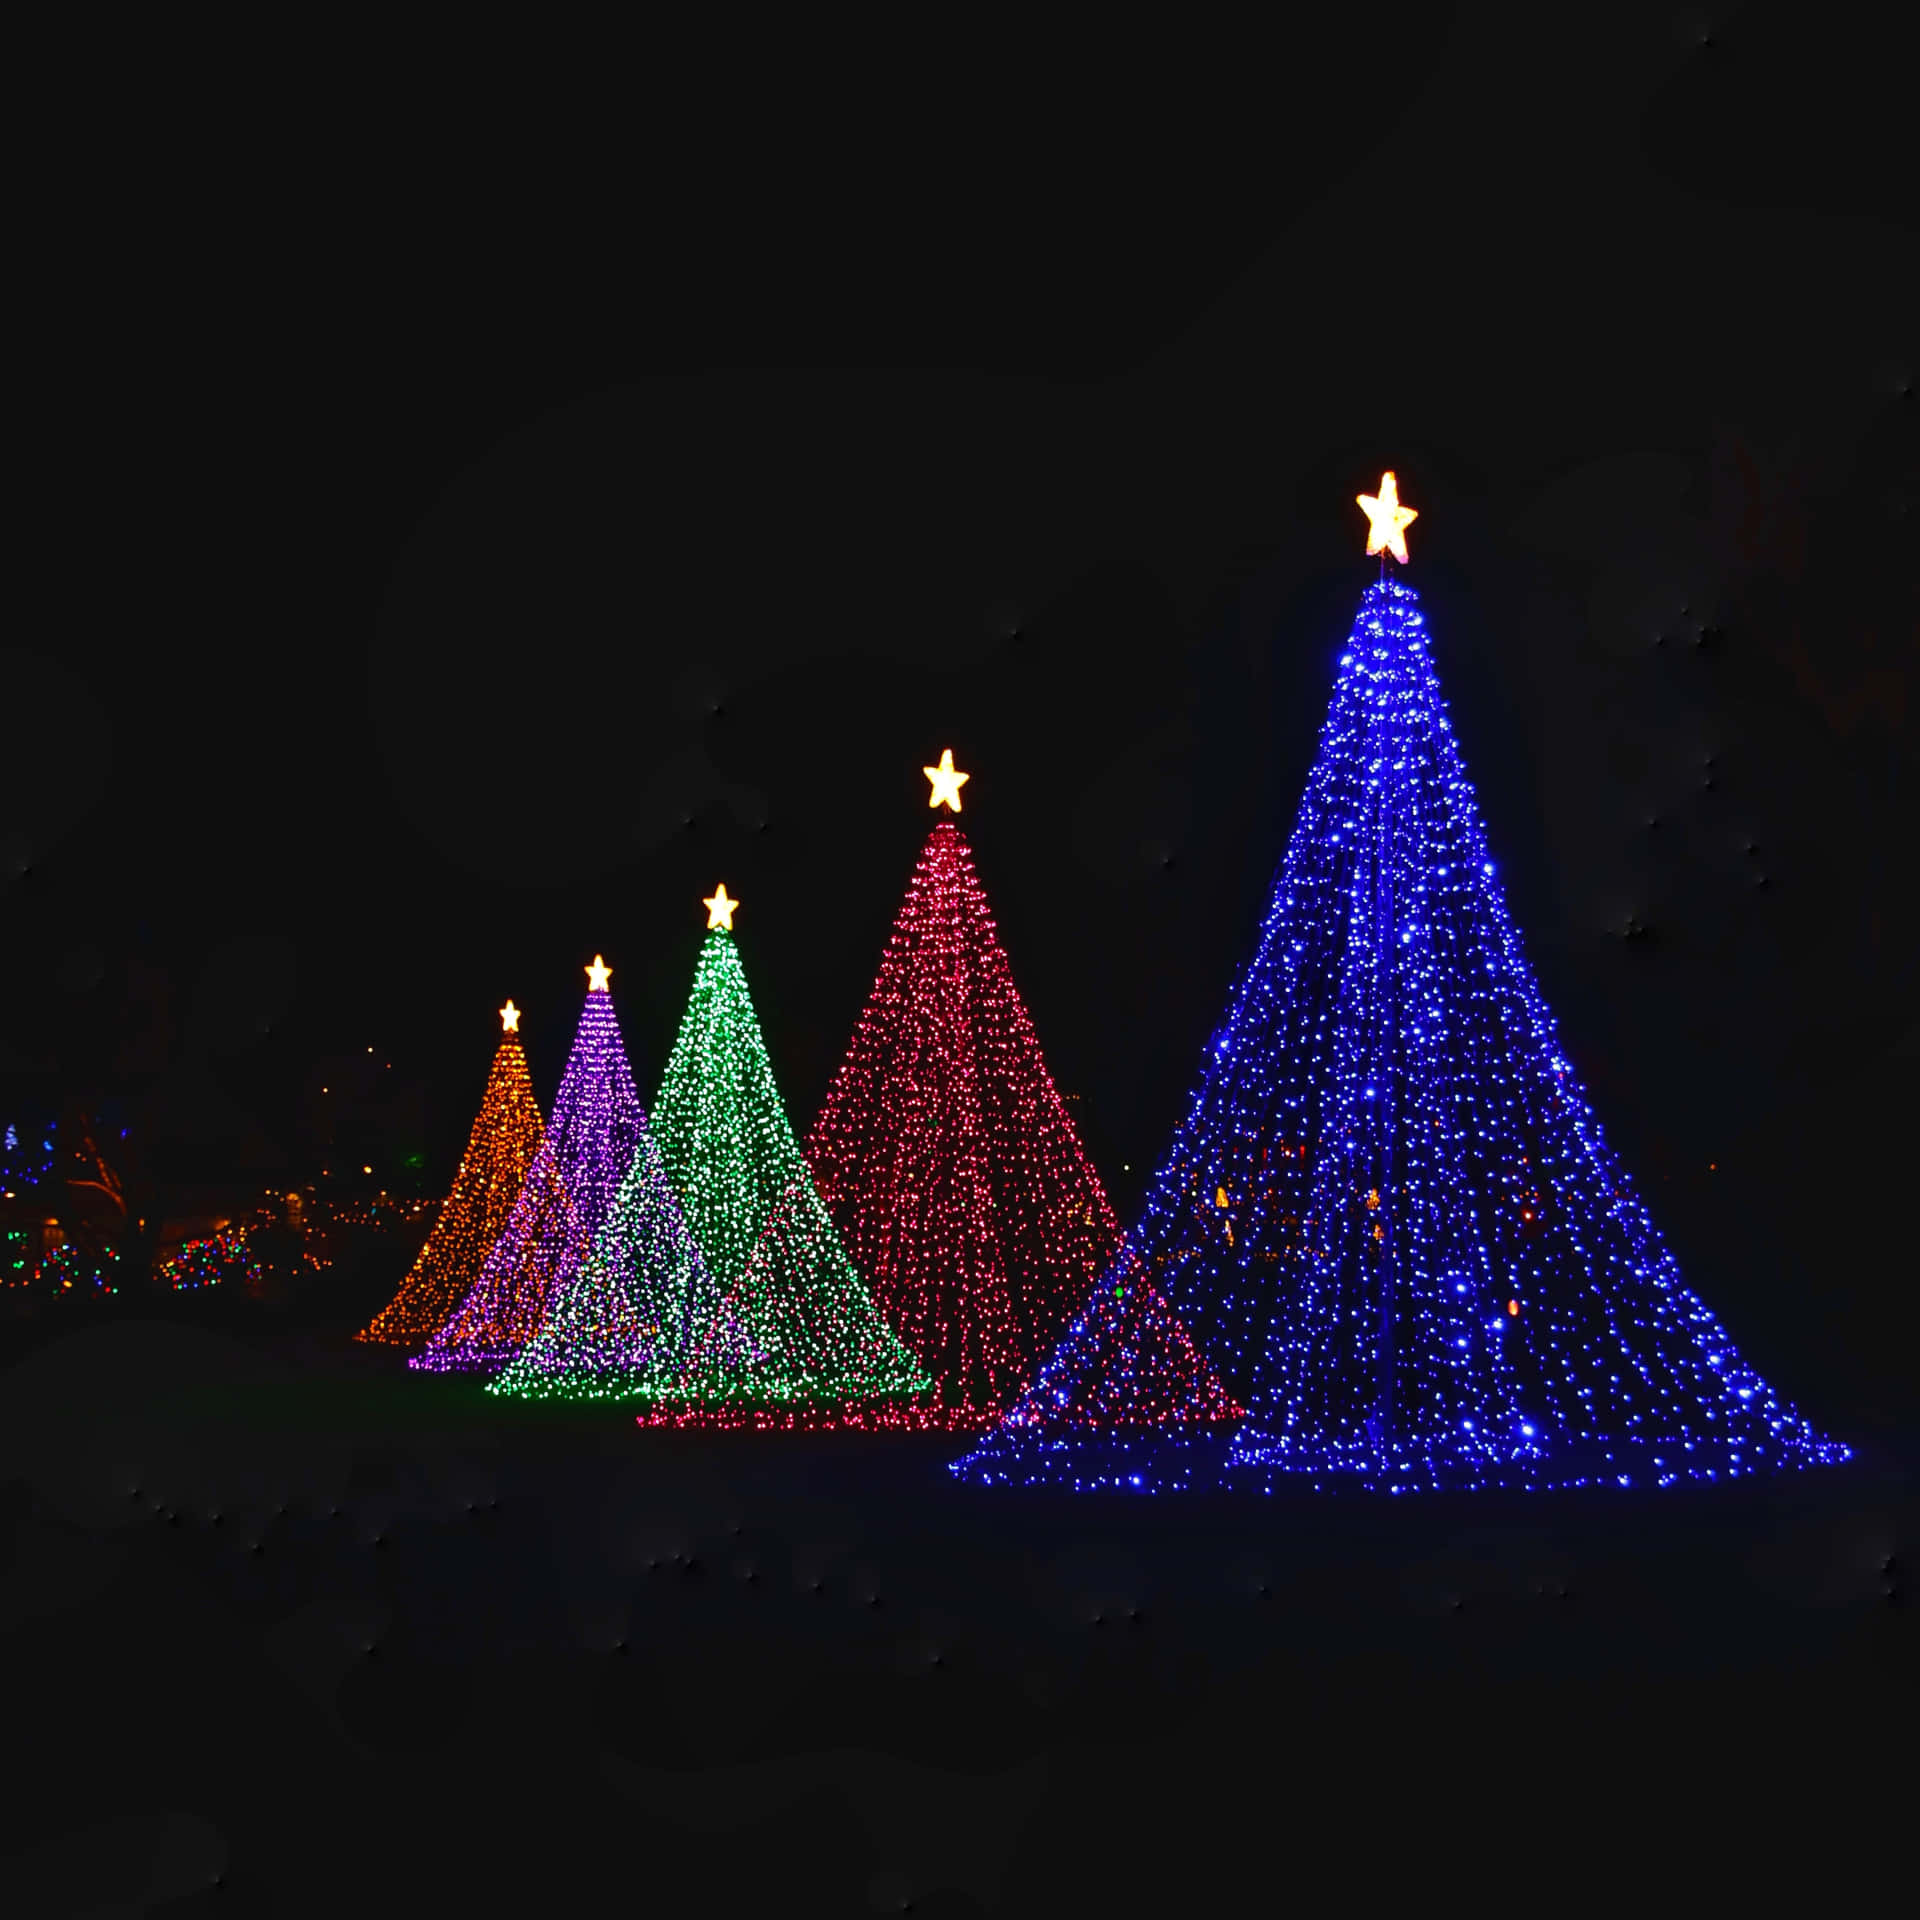 Belyse dit hjem i denne jul med levende lys, der fremhæver magien af sæsonen